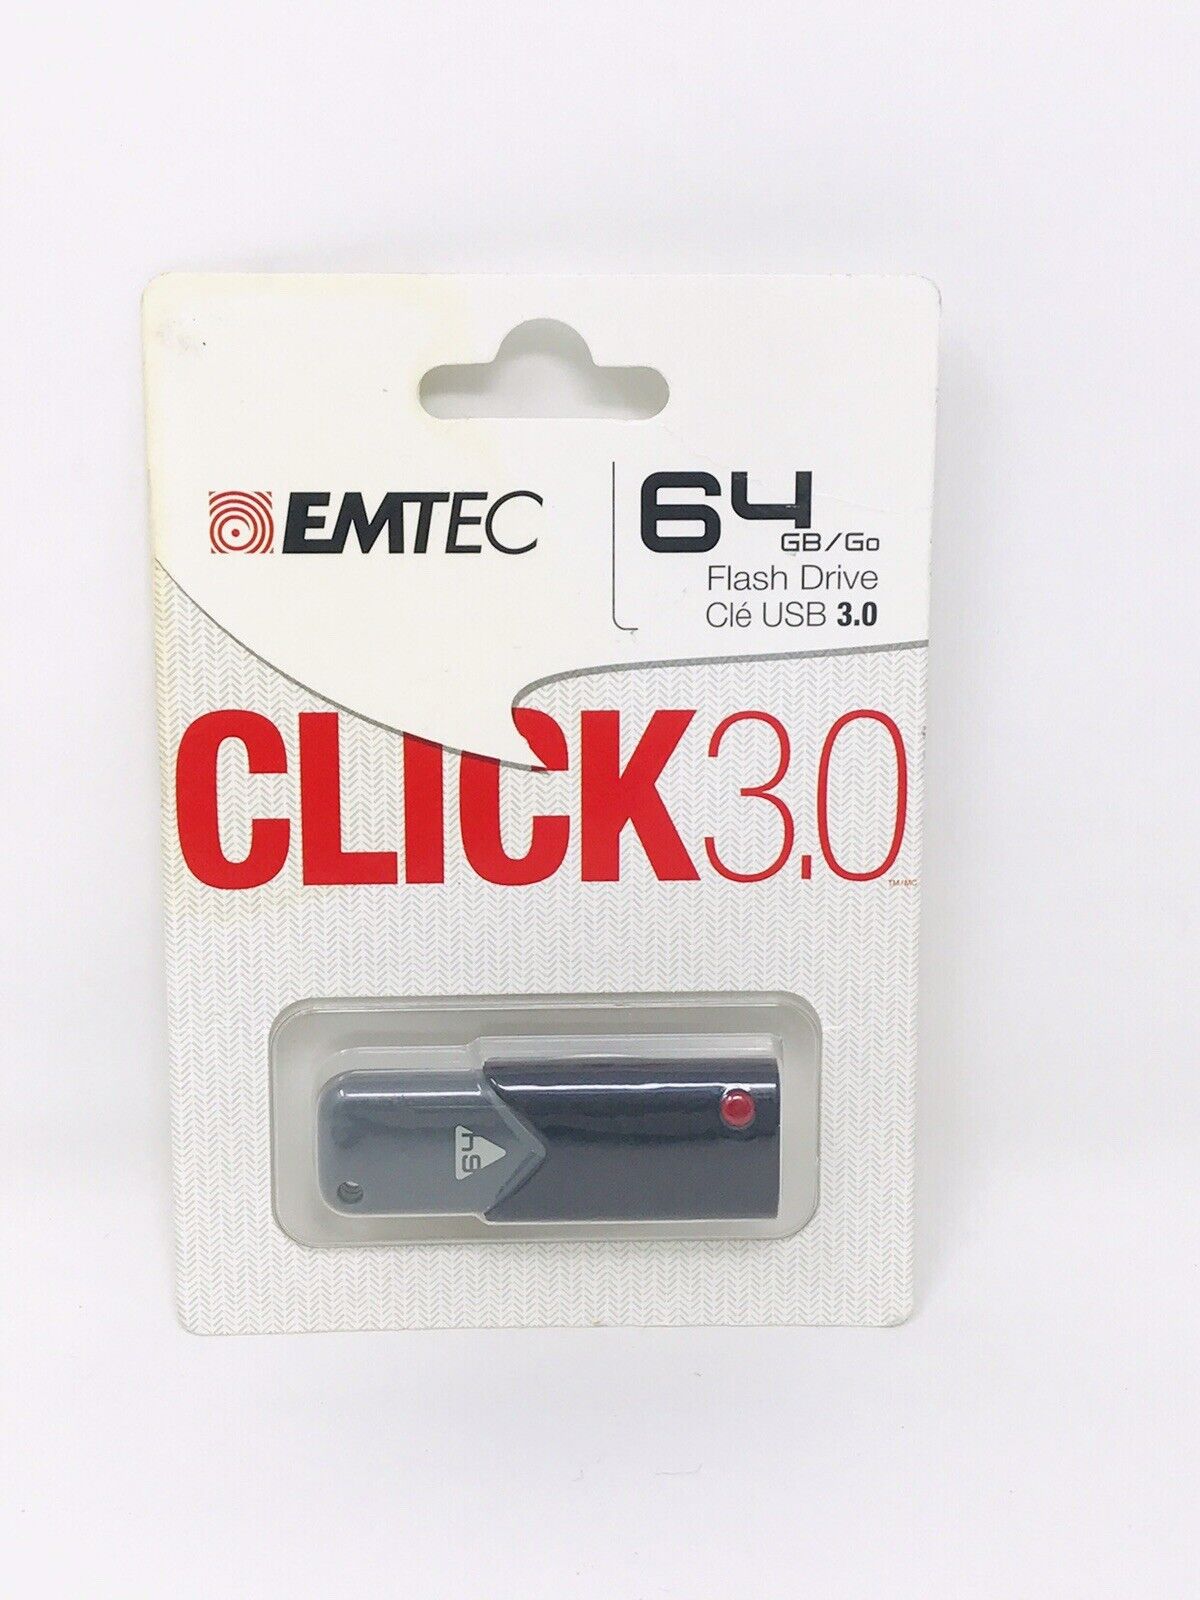 EMTEC 64 GB Flash Drive CLICK 3.0